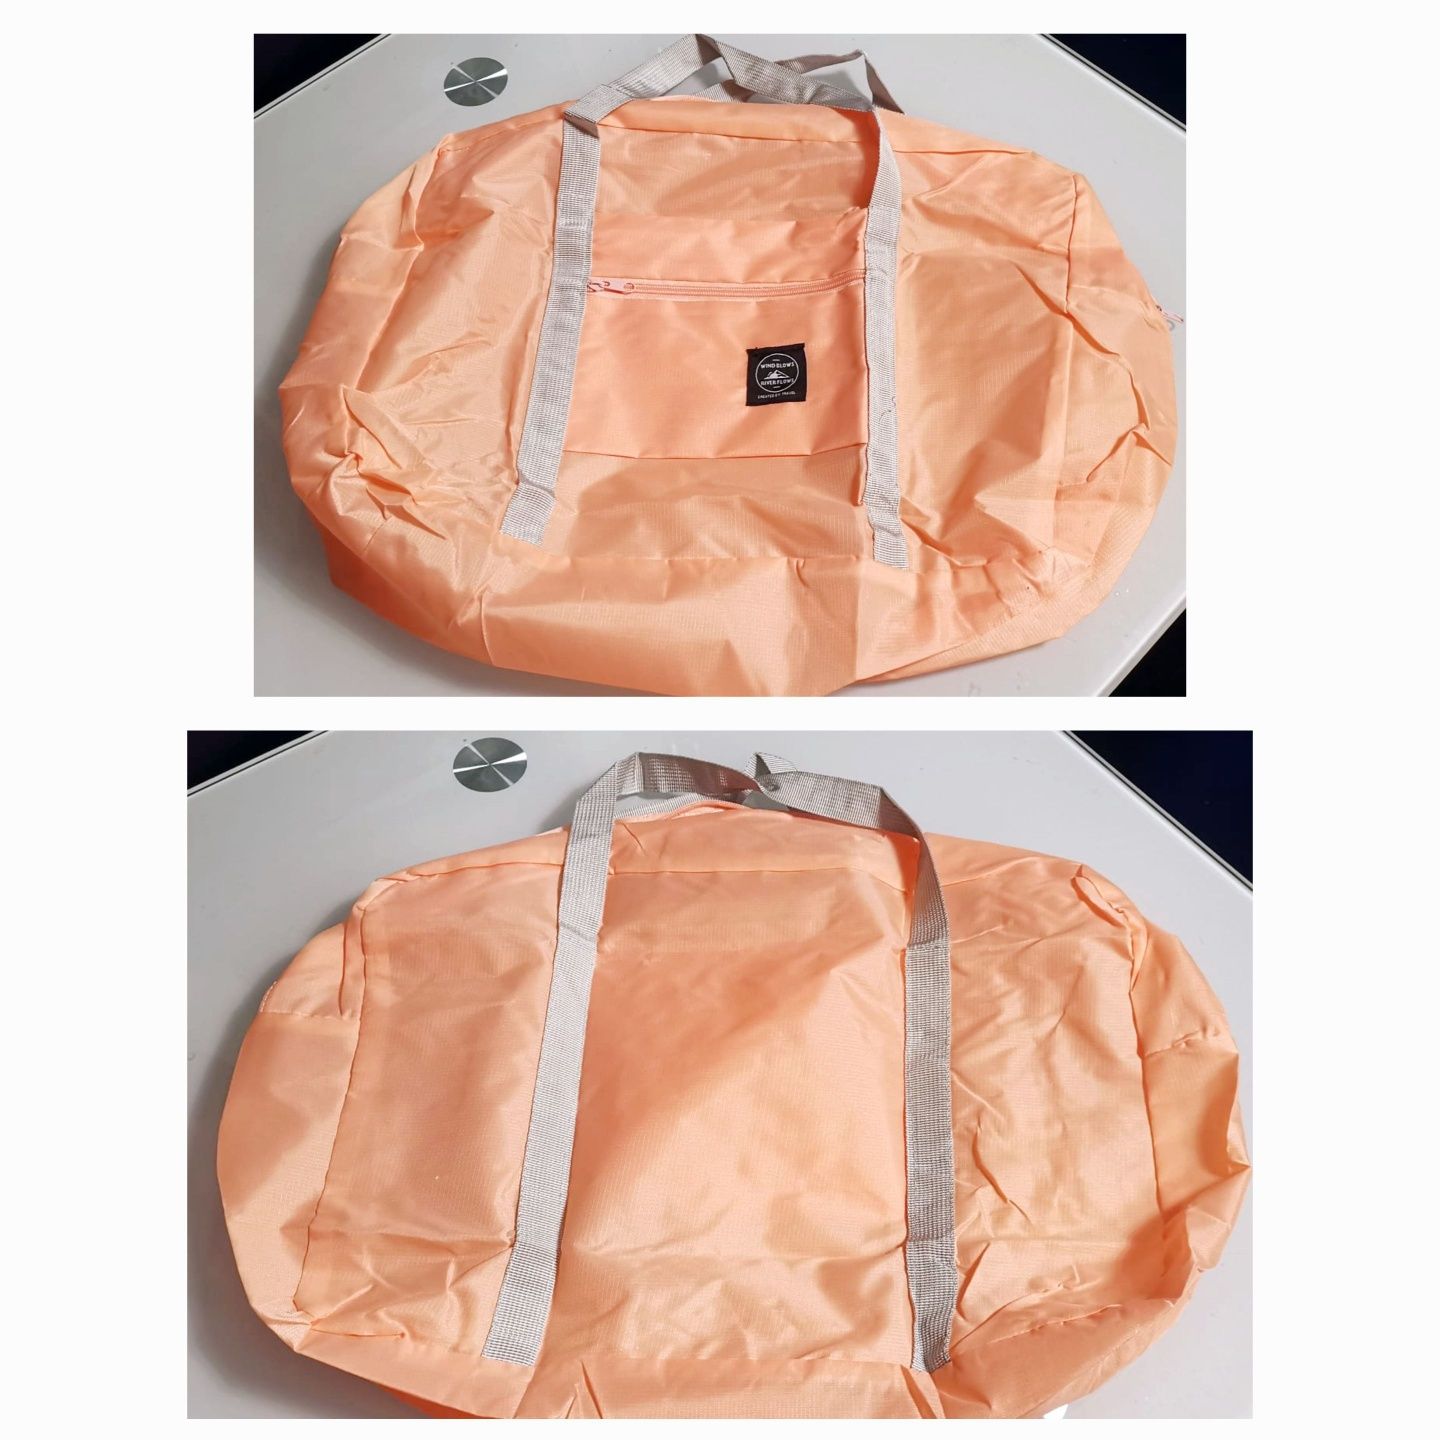 Nowa wygodna, podróżna, wodoodporna różowa torba, 45 cm x 30 cm